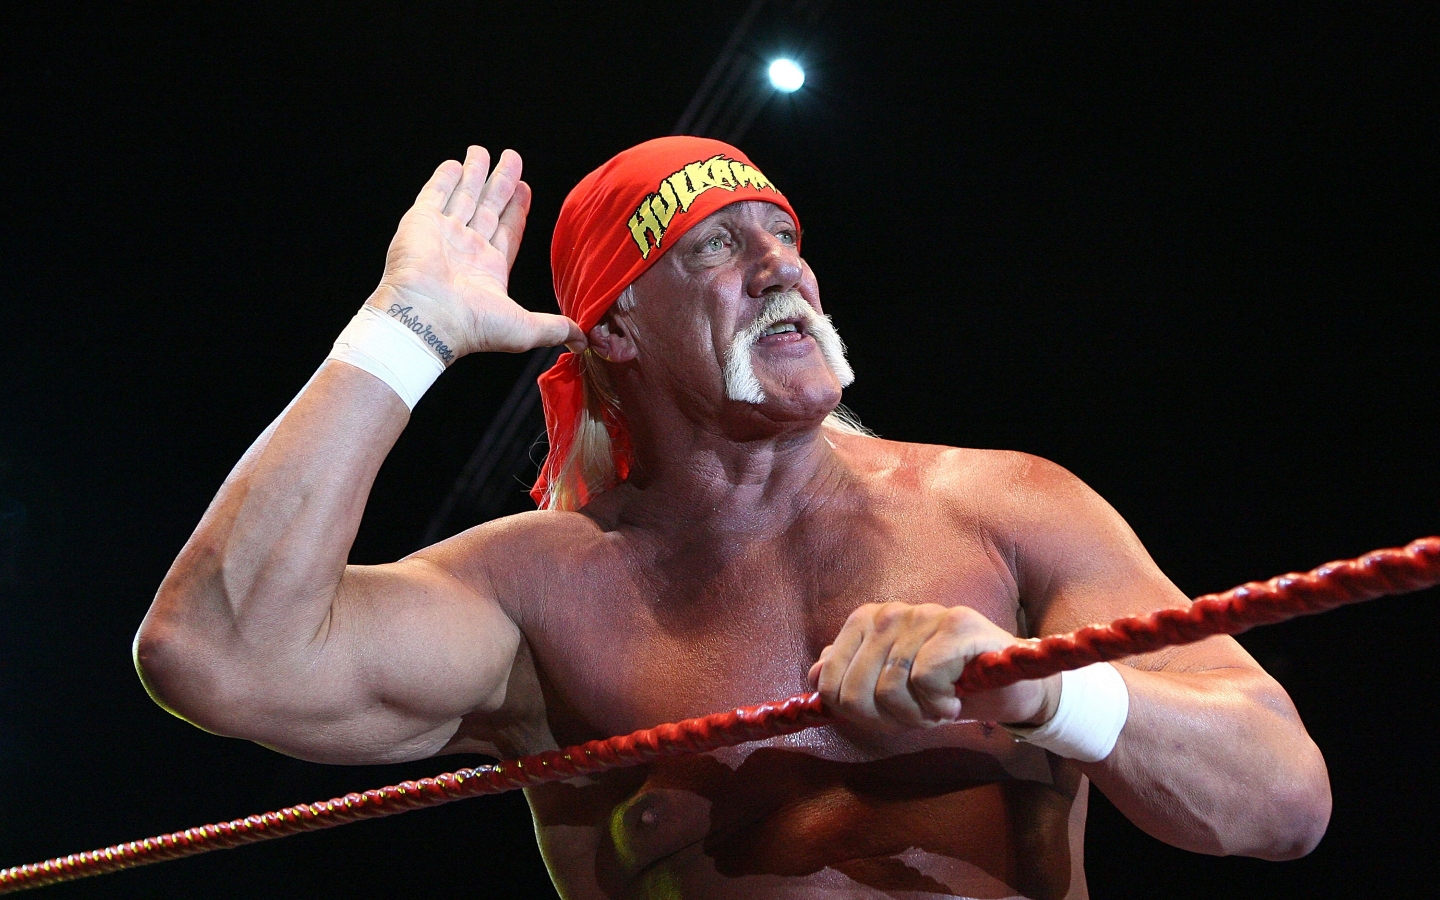 Hulk Hogan Salute for 1440 x 900 widescreen resolution